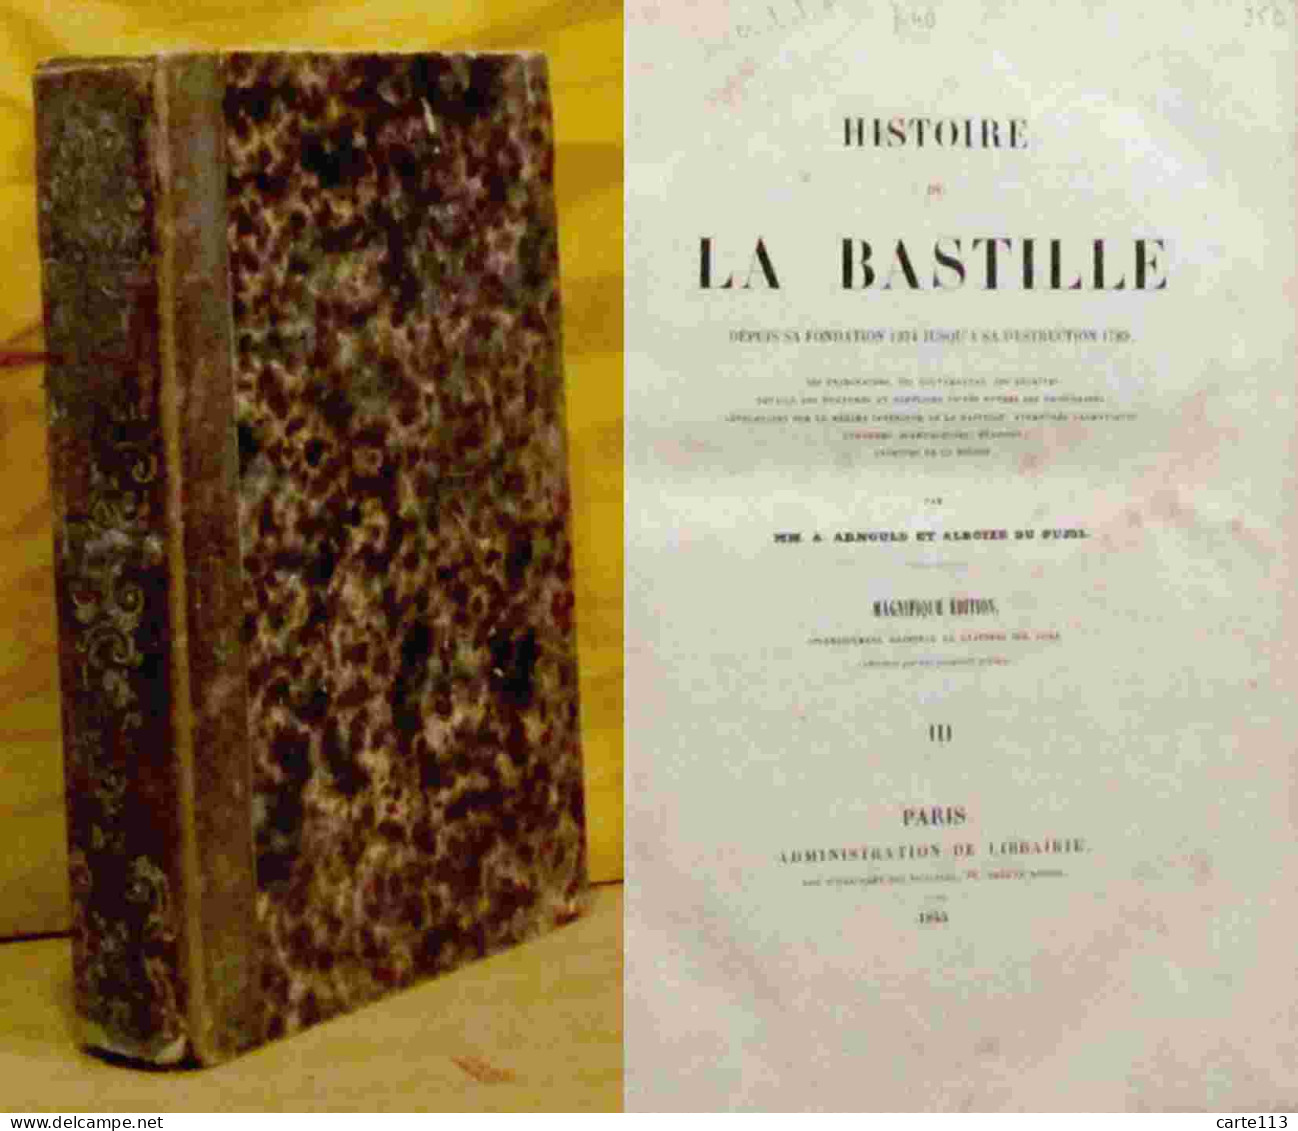 ARNOULD Auguste - PUJOL Alboize Du - HISTOIRE DE LA BASTILLE DEPUIS SA FONDATION 1374 JUSQU' A SA DESTRUCT - 1801-1900